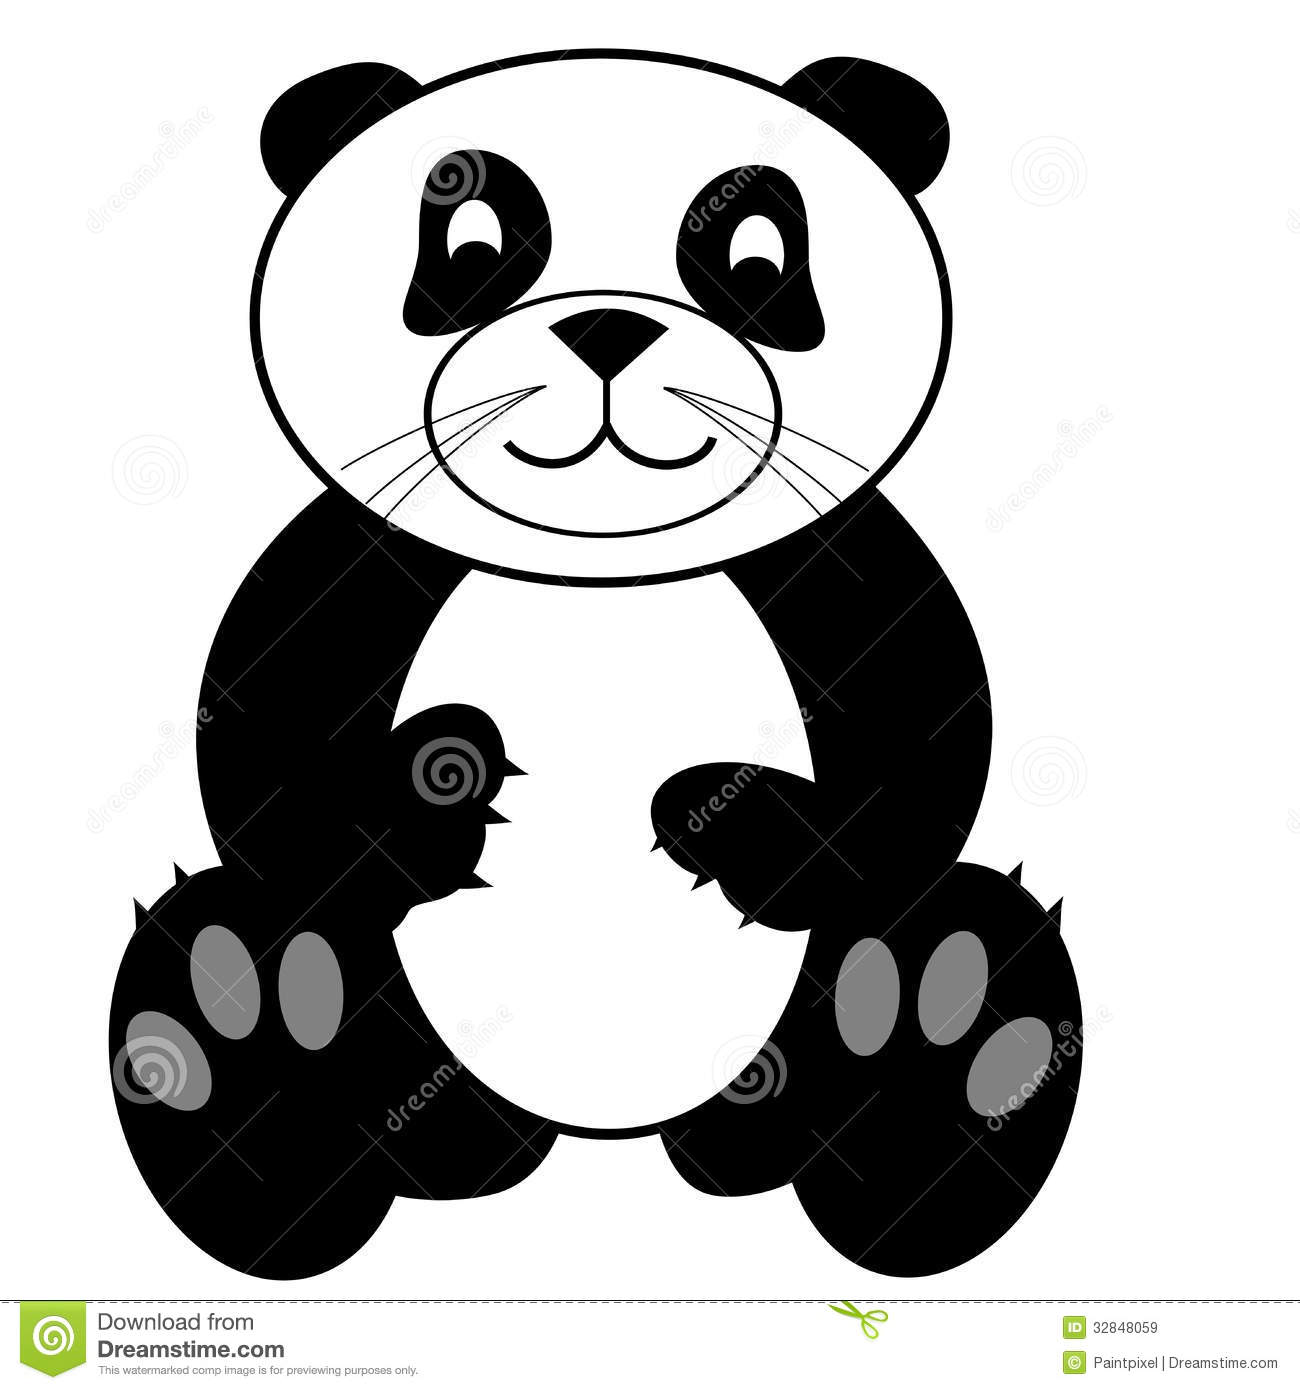 Cute panda bear.